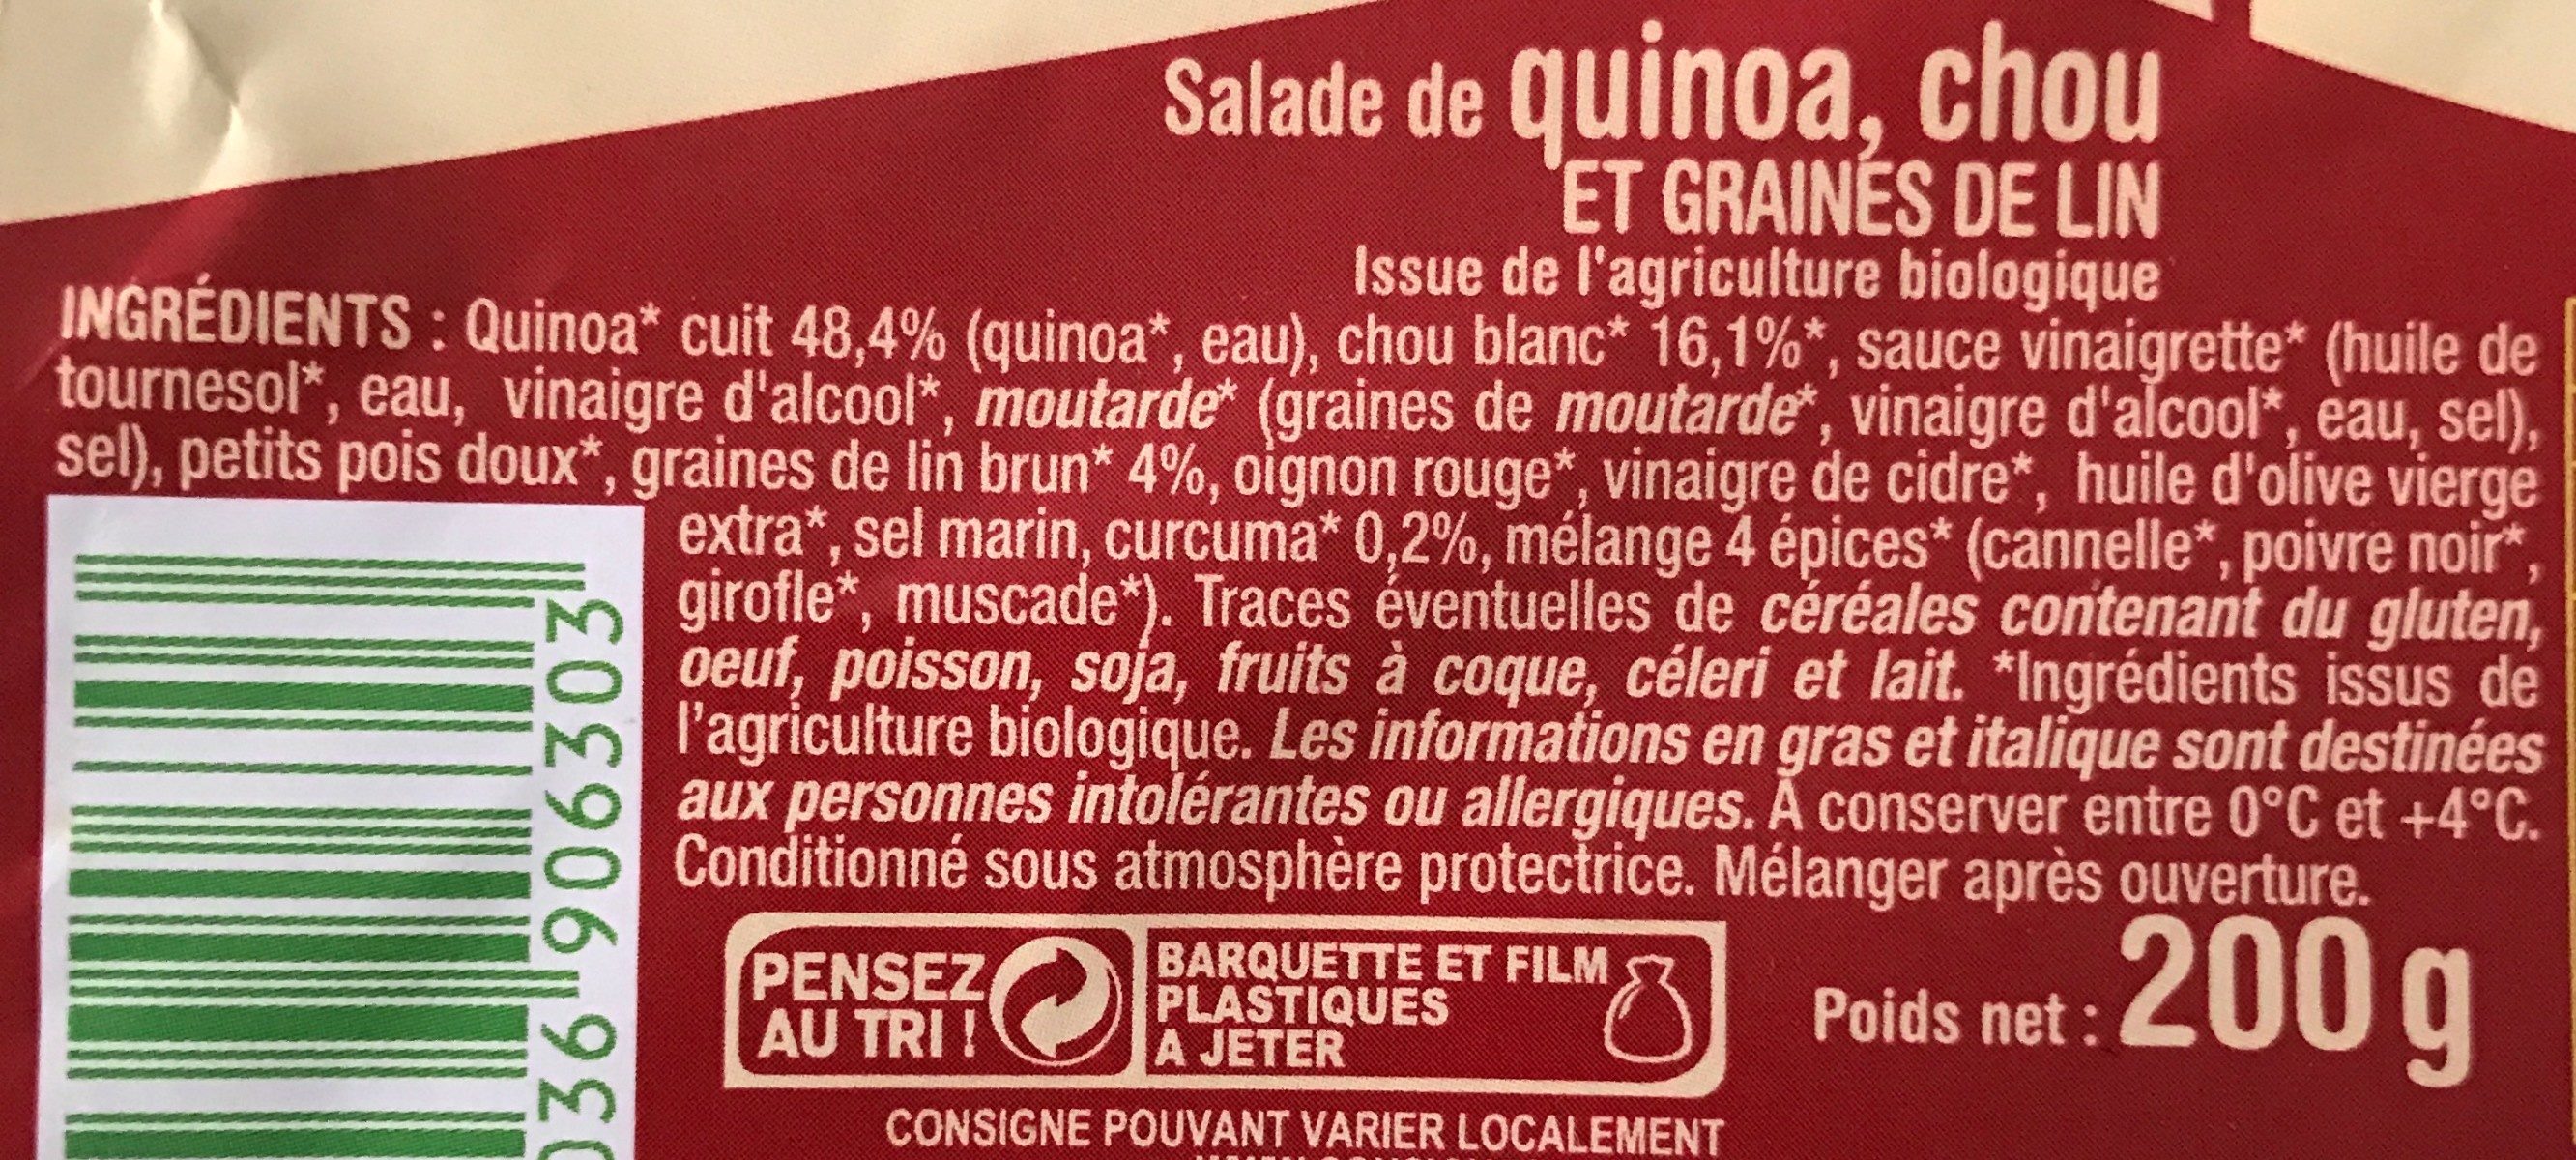 Salade de quinoa, chou et graines de lin - Ingredientes - fr